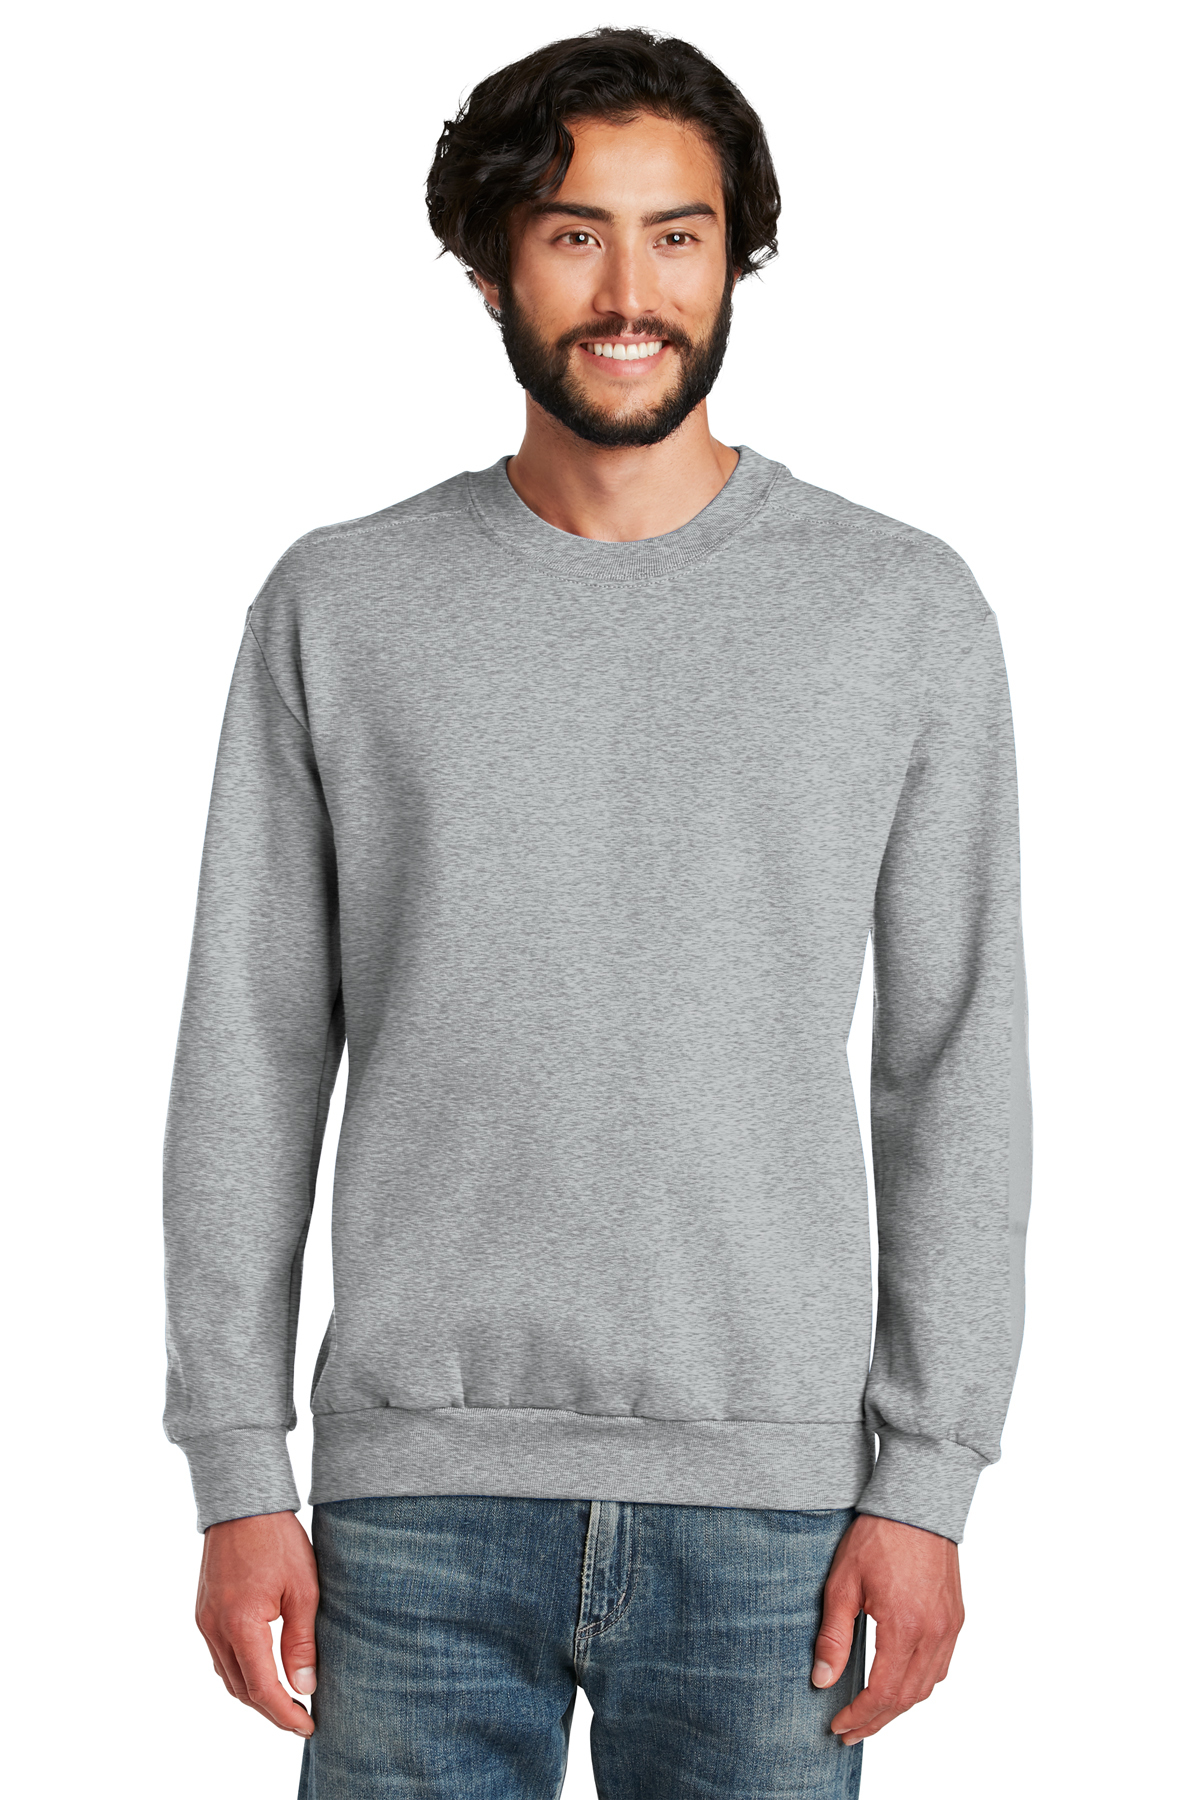 Anvil Crewneck Sweatshirt | Product | Company Casuals